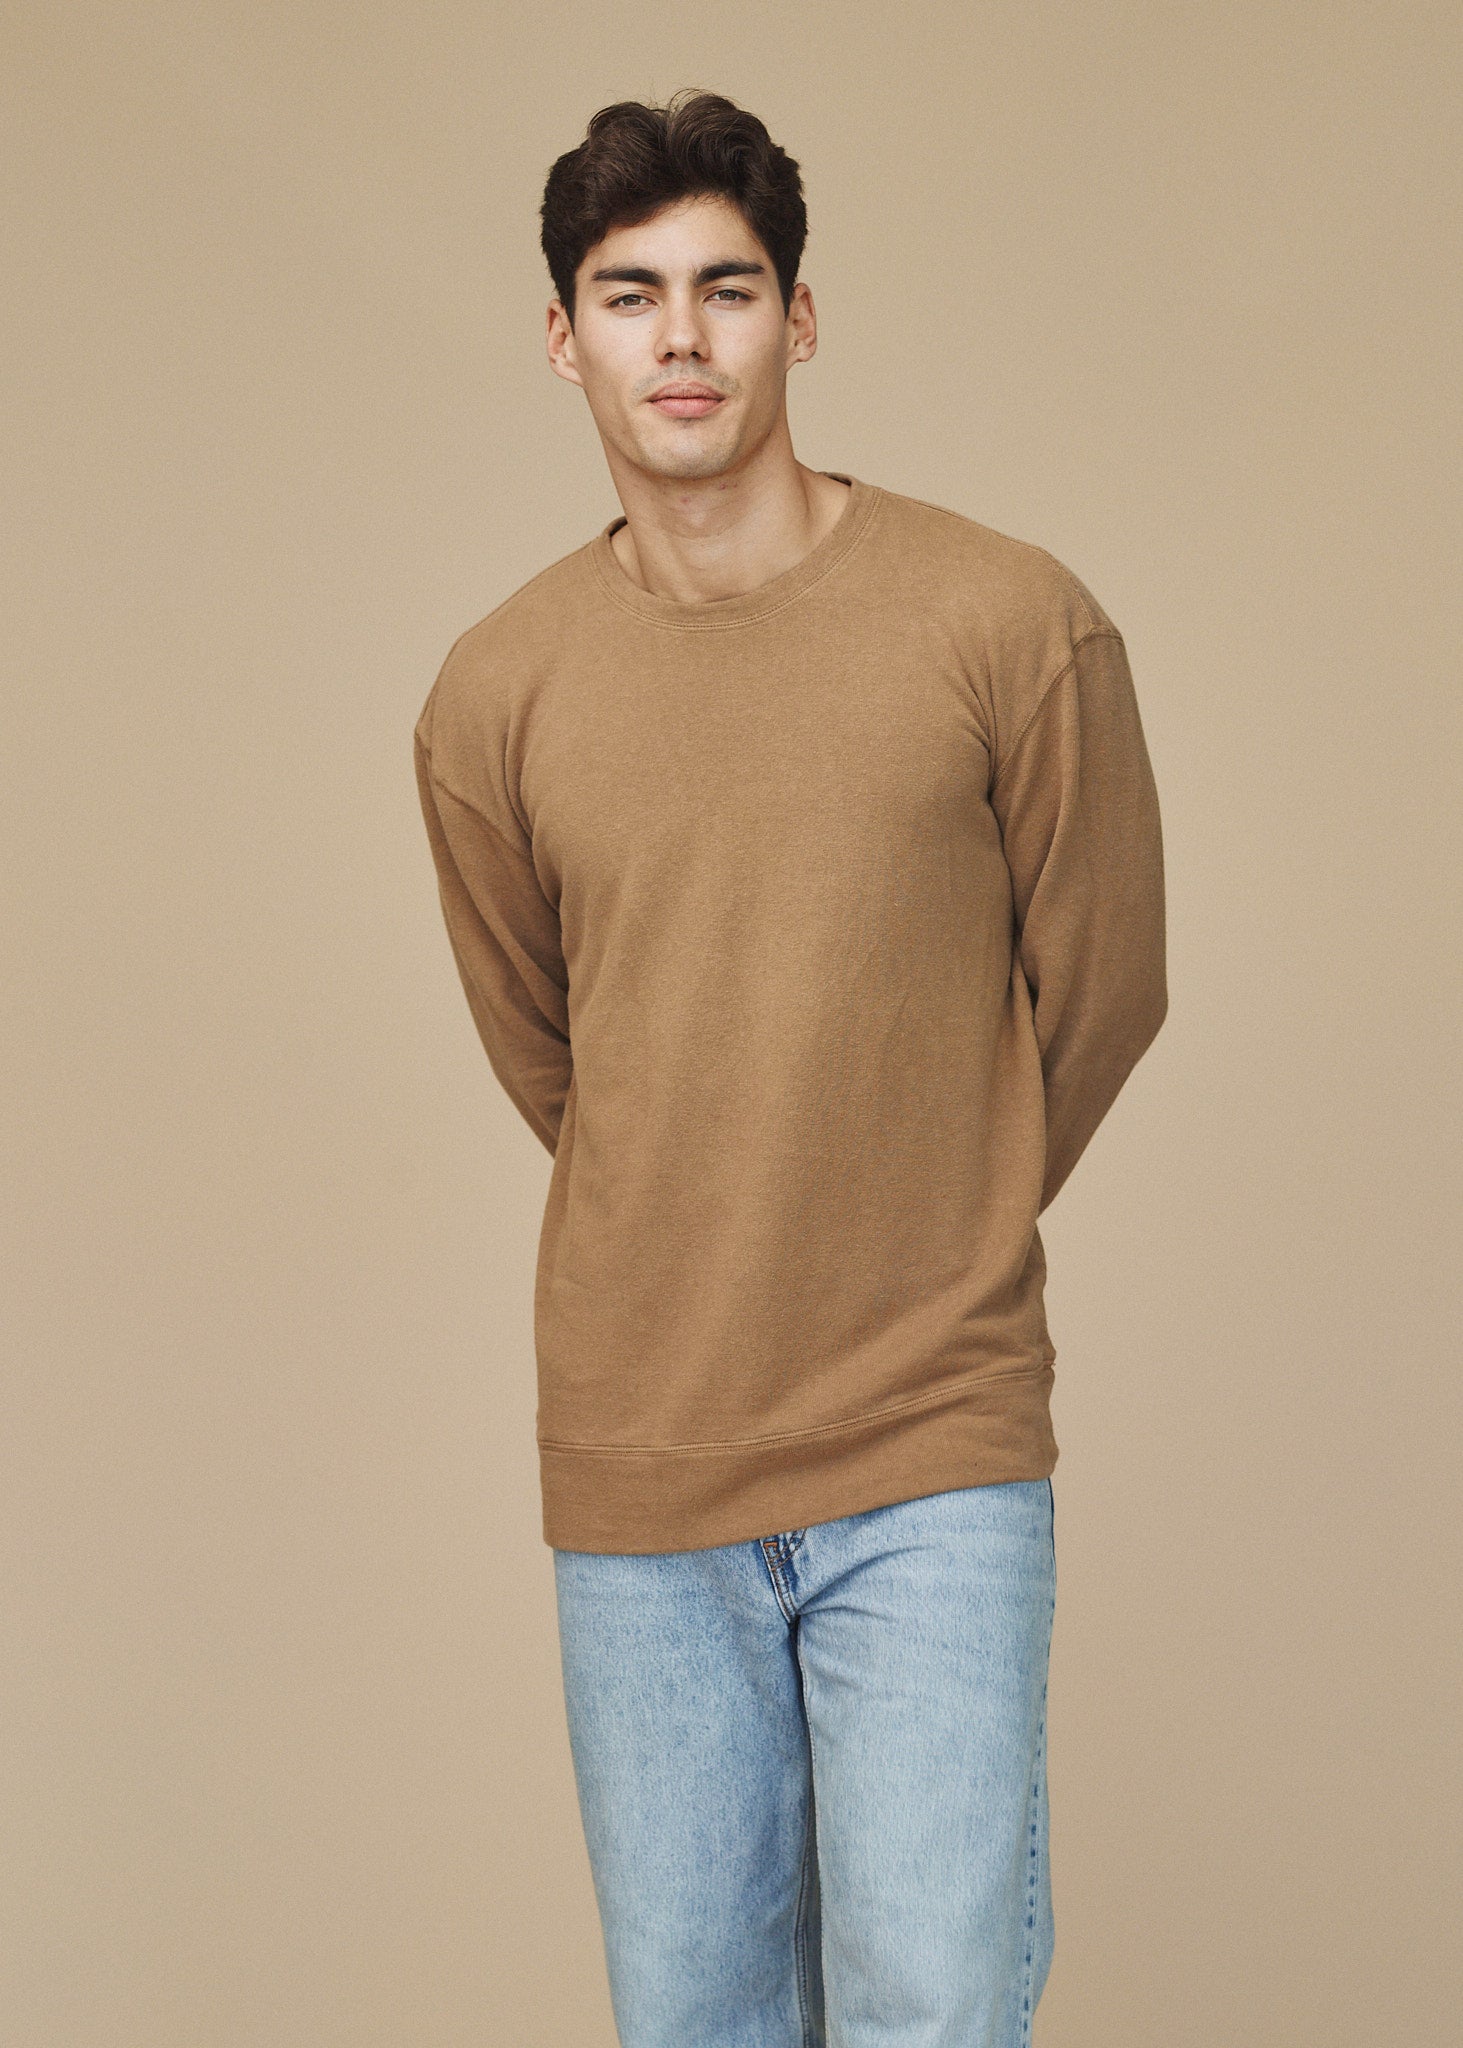 Tahoe Sweatshirt | Jungmaven Hemp Clothing & Accessories / model_desc: Henry is 6’0” wearing L